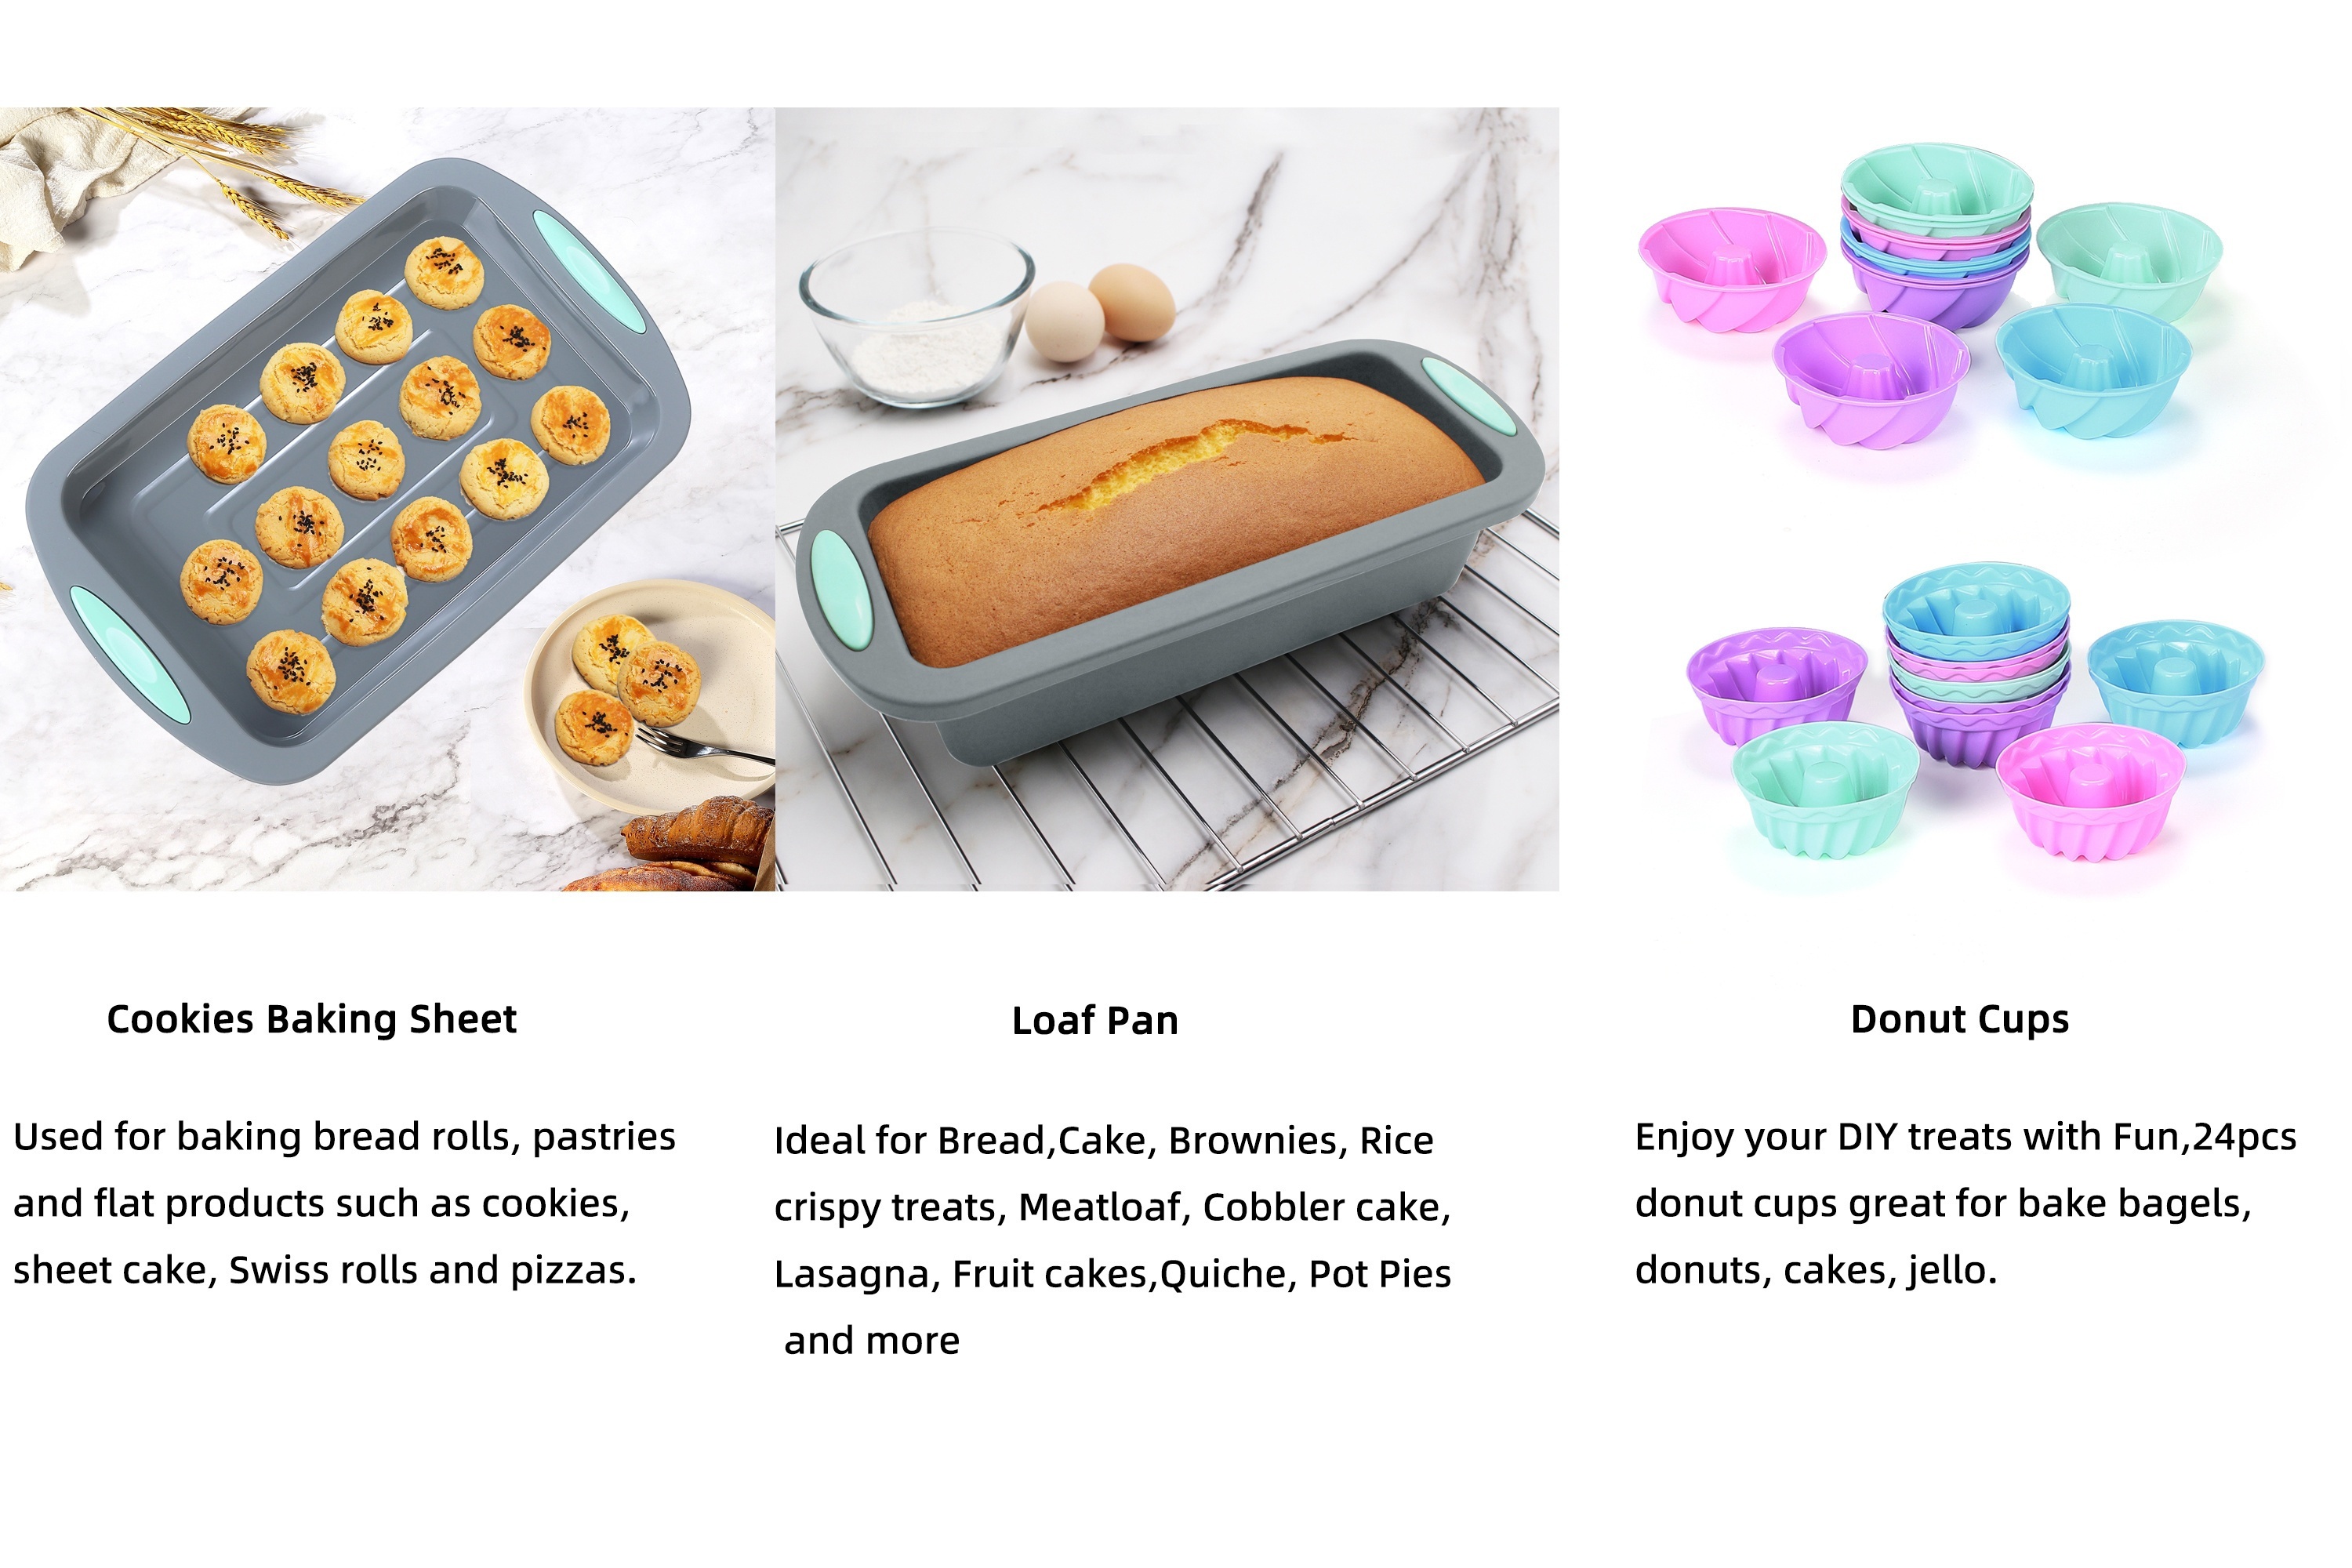 Silicone Baking Set, Nonstick Bakeware Set Baking Cookie Sheets Cake Muffin  Bread Pan, Loaf Pan, Cake Pan, Pizza Pan, Mini Cupcake Mold, Bundt Pan,  Charlotte Cake Pan, Measuring Cup And Spoon, Baking